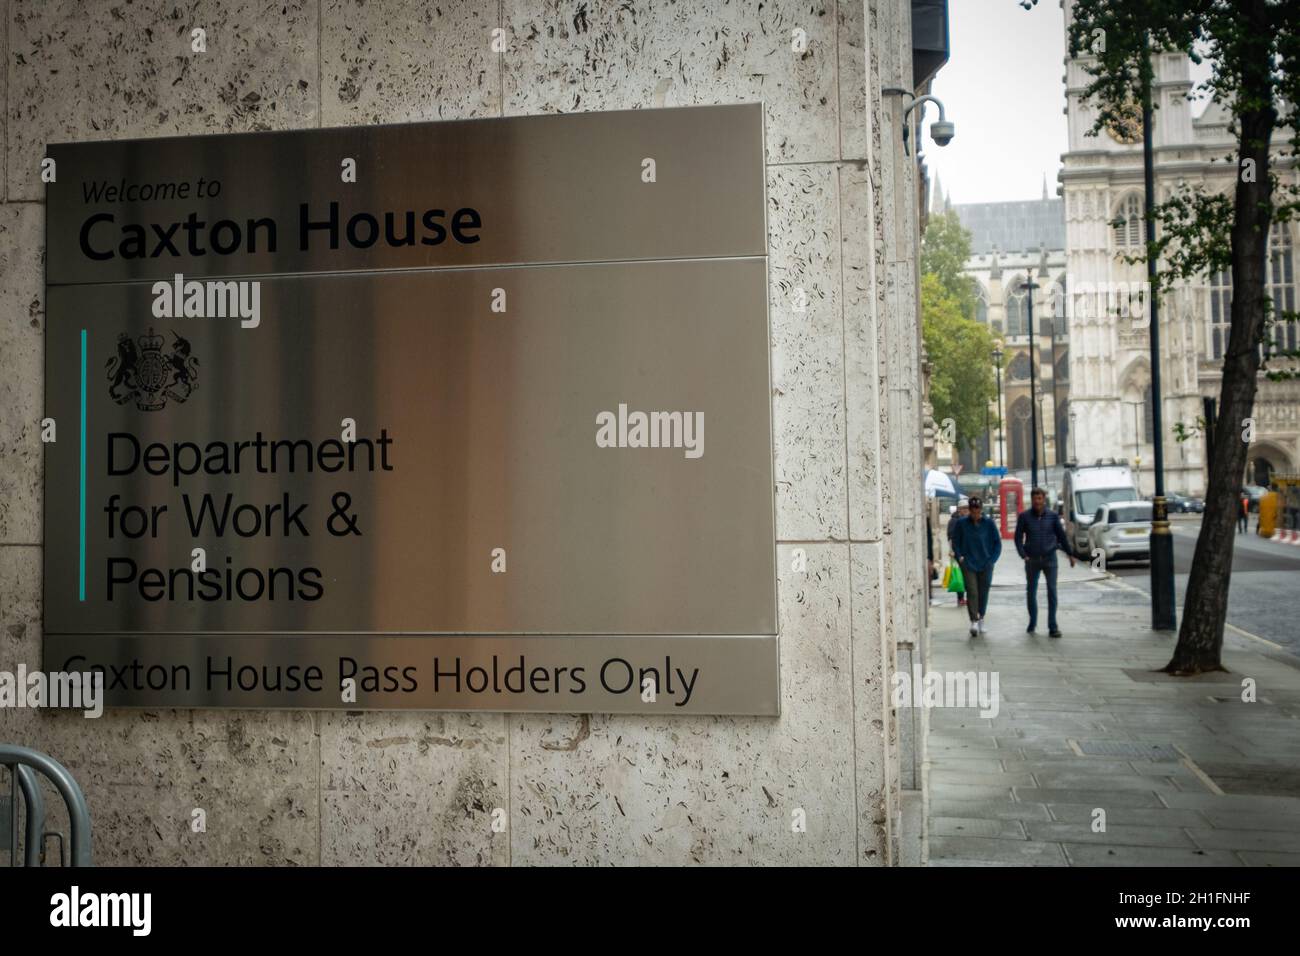 Londres- Ministère du travail et des pensions de Caxton House à Westminster.Bâtiment du gouvernement du Royaume-Uni. Banque D'Images